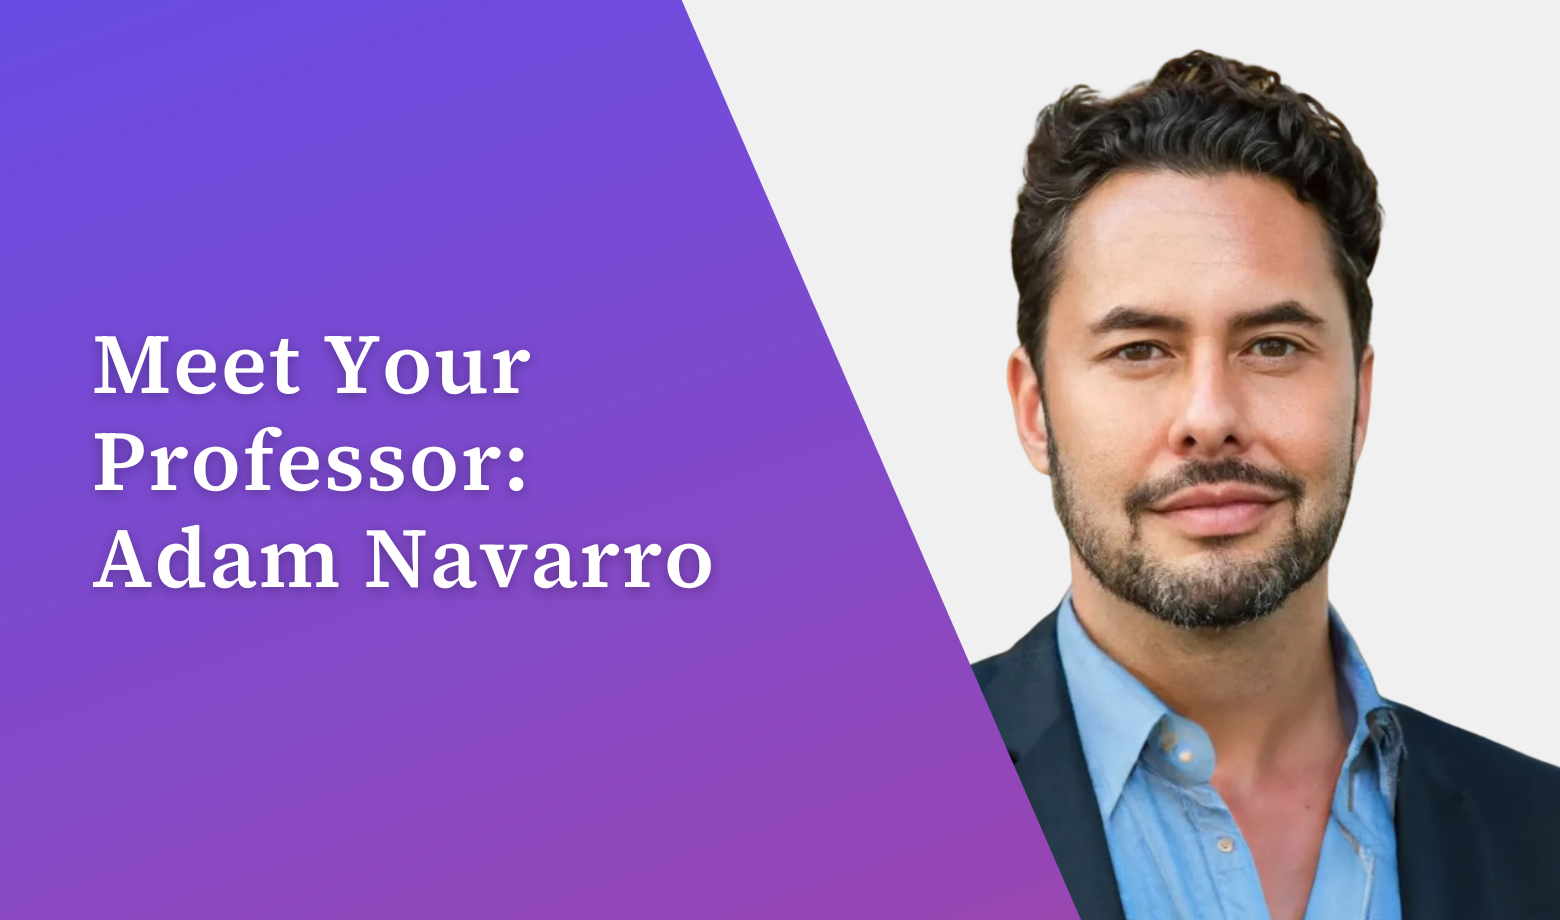 Meet Your Professor: Adam Navarro